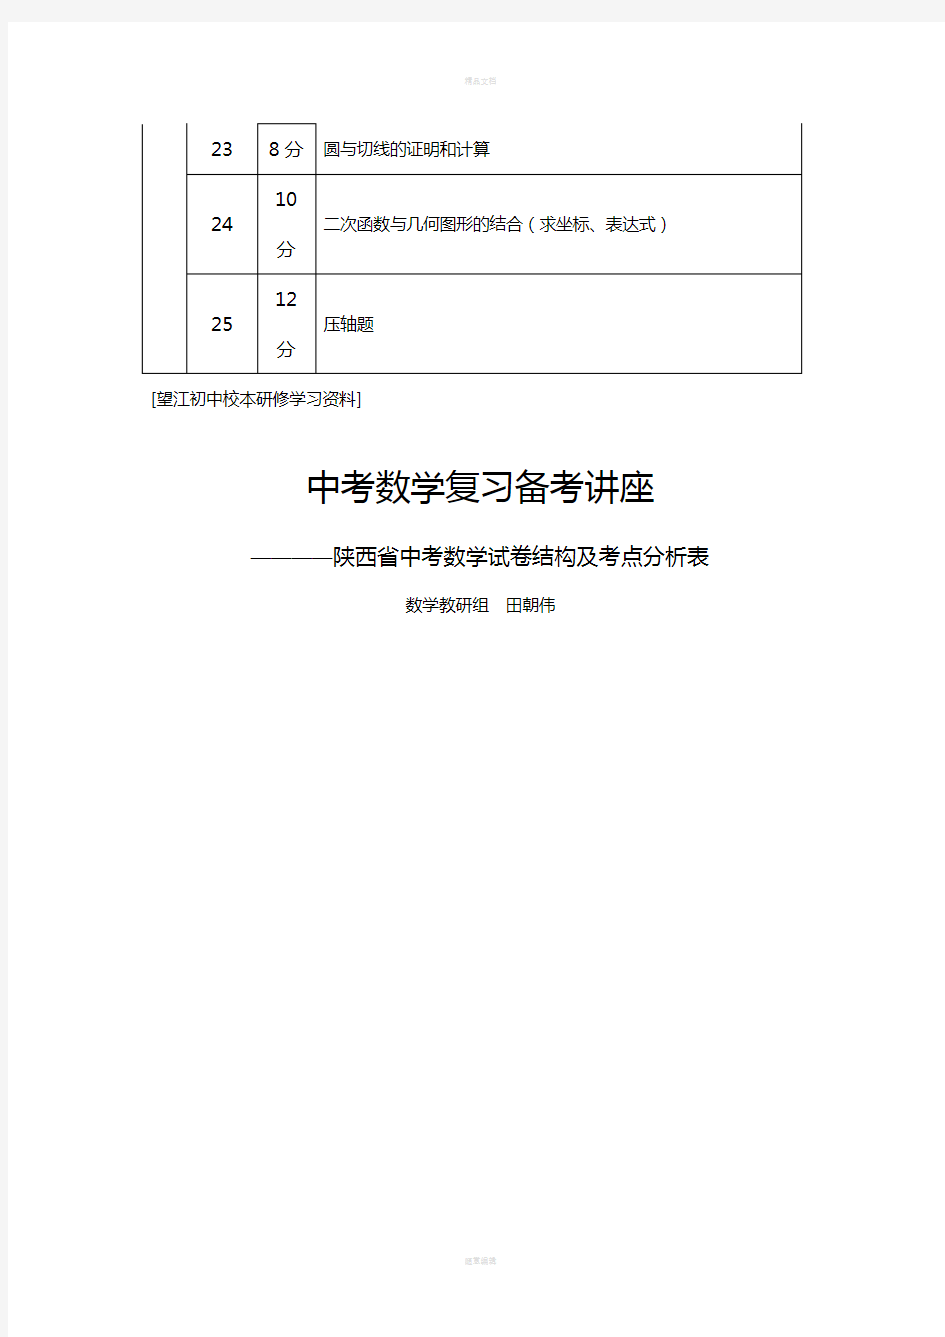 陕西省中考数学试卷结构及考点分析表